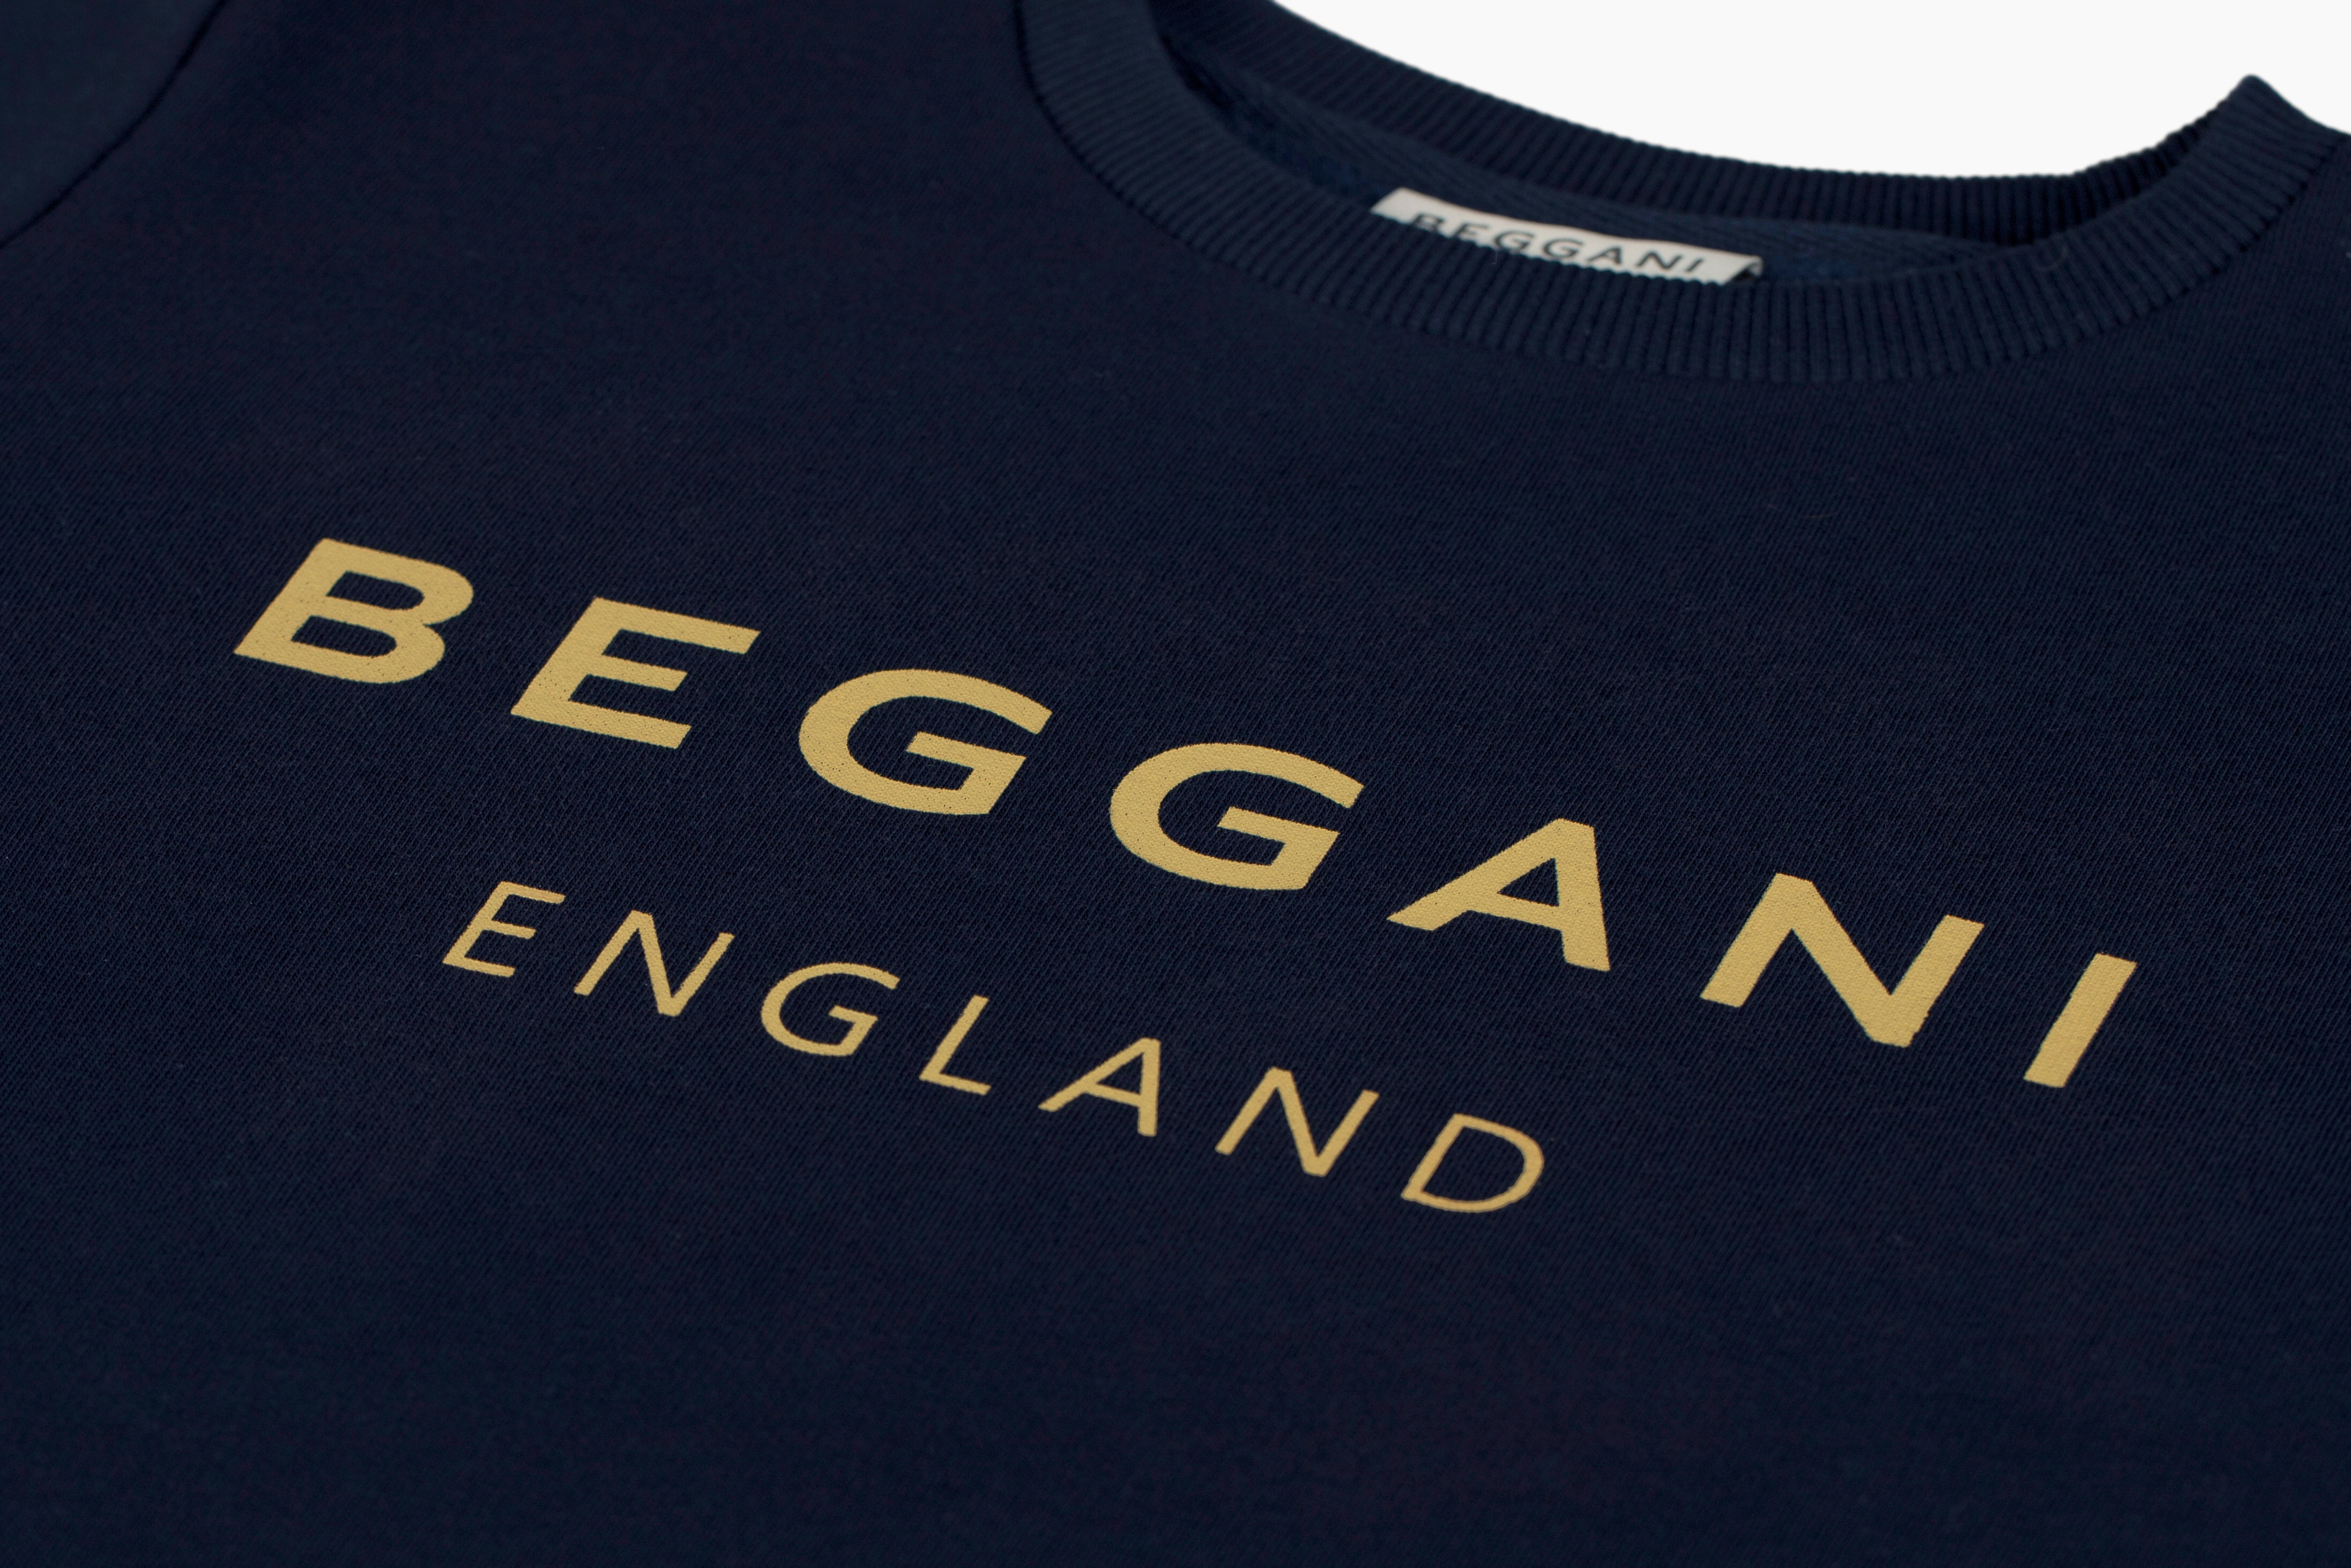 Women's BEGGANI England sweatshirt